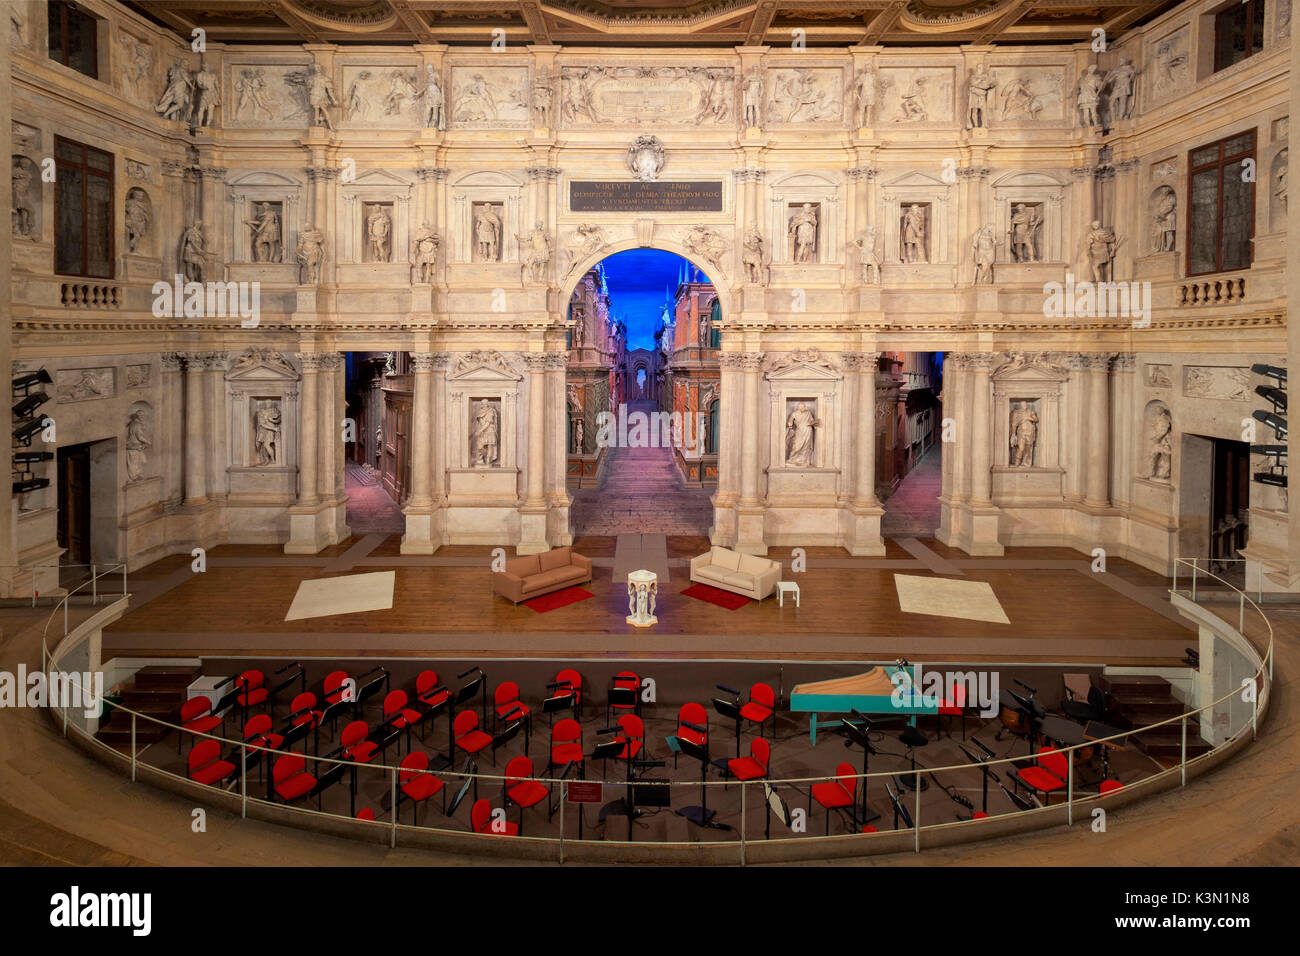 Teatro Olimpico interno in Vicenza, Italia Teatro Olimpico di Vicenza è in assoluto il primo teatro coperto in tutto il mondo ed è stato progettato dal famoso architetto rinascimentale Andrea Palladio Foto Stock